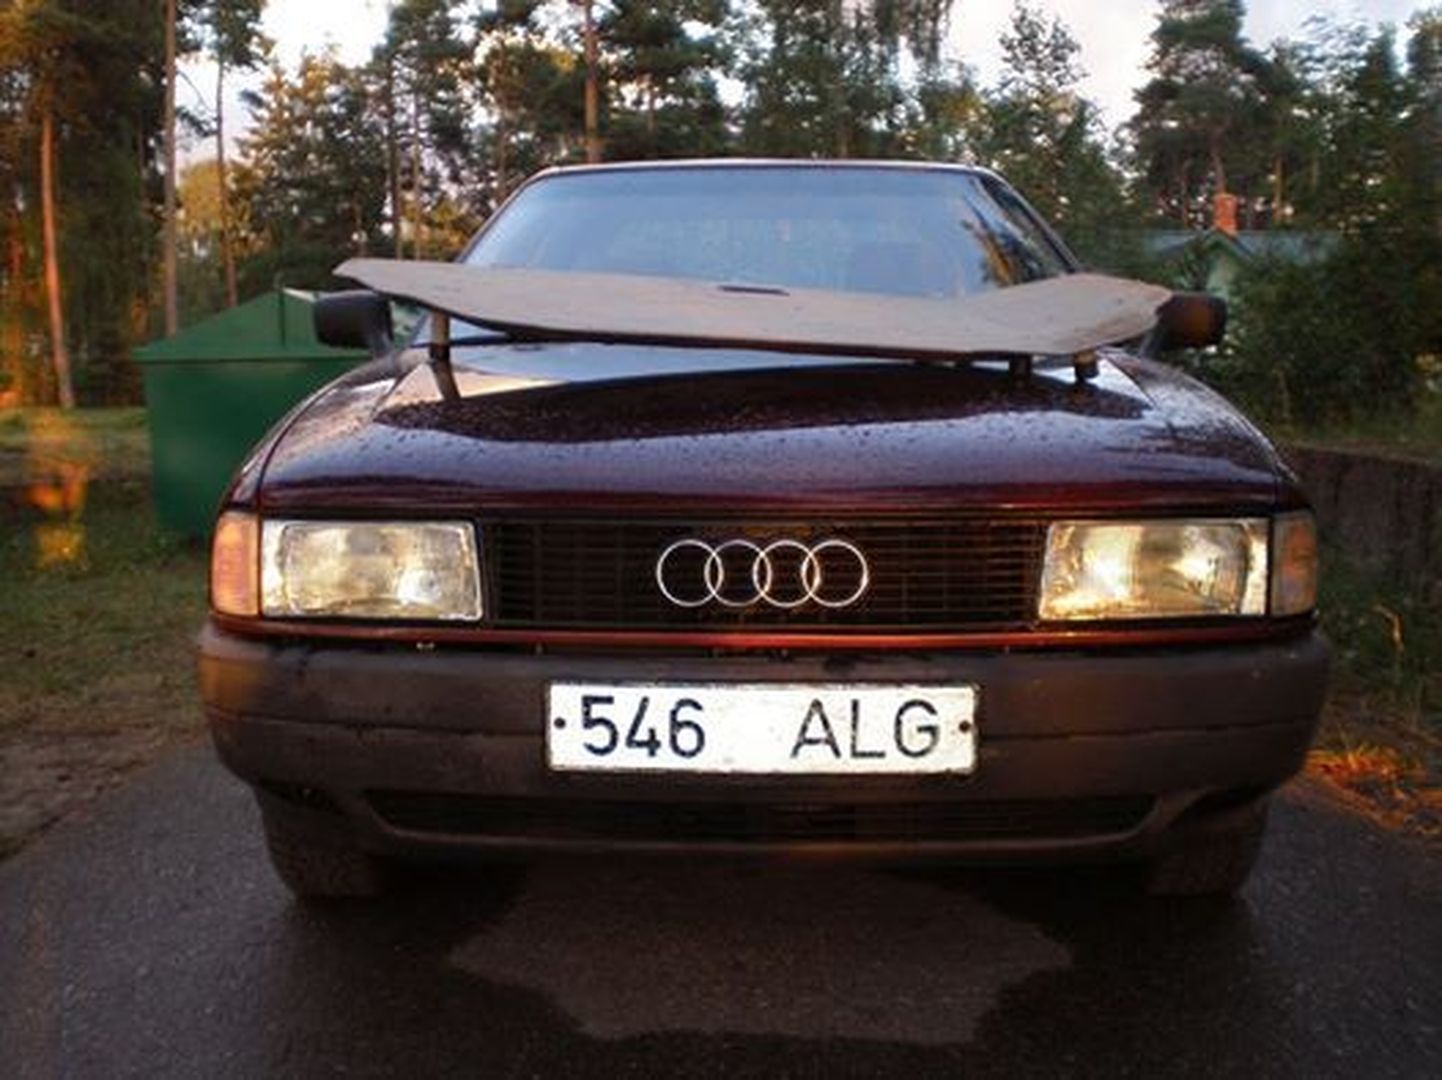 Võsul sõidukite keelualas pikka aega seisnud Audi.